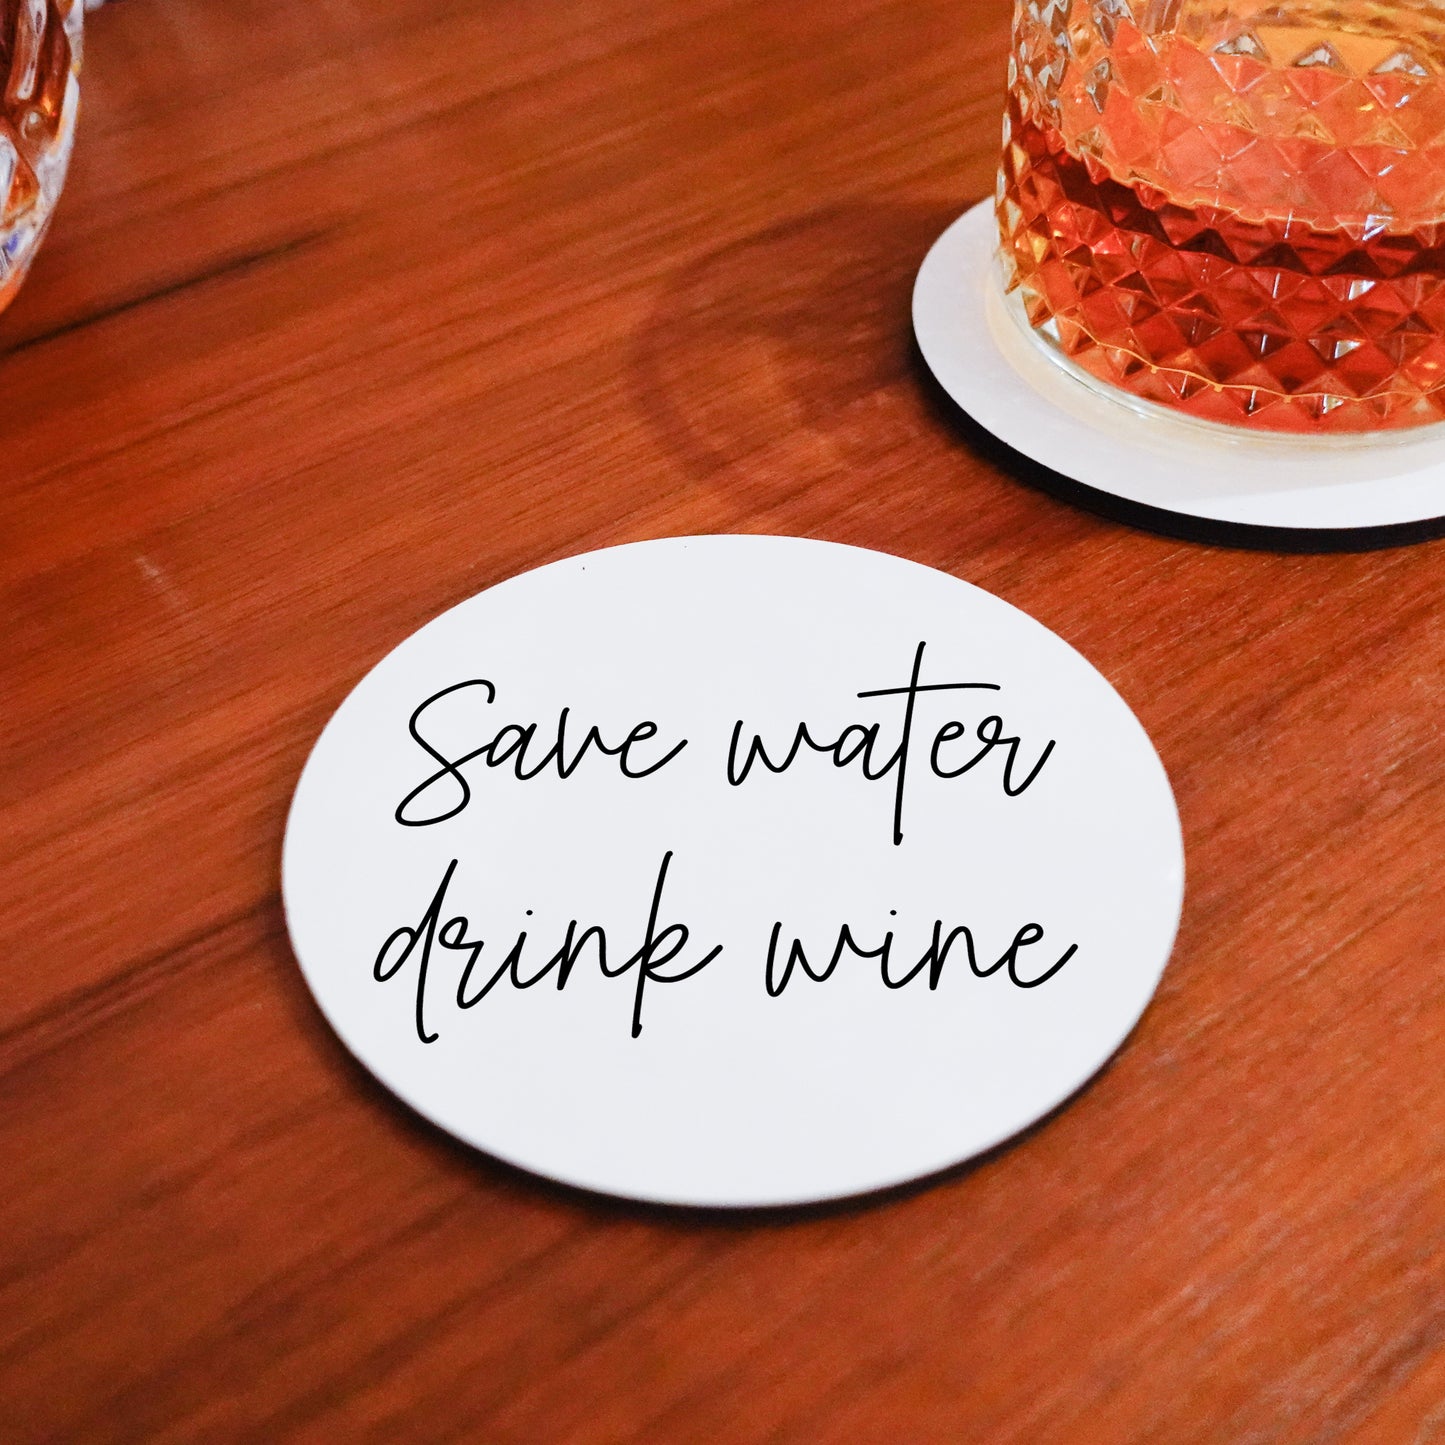 Onderzetter - Save water drink wine